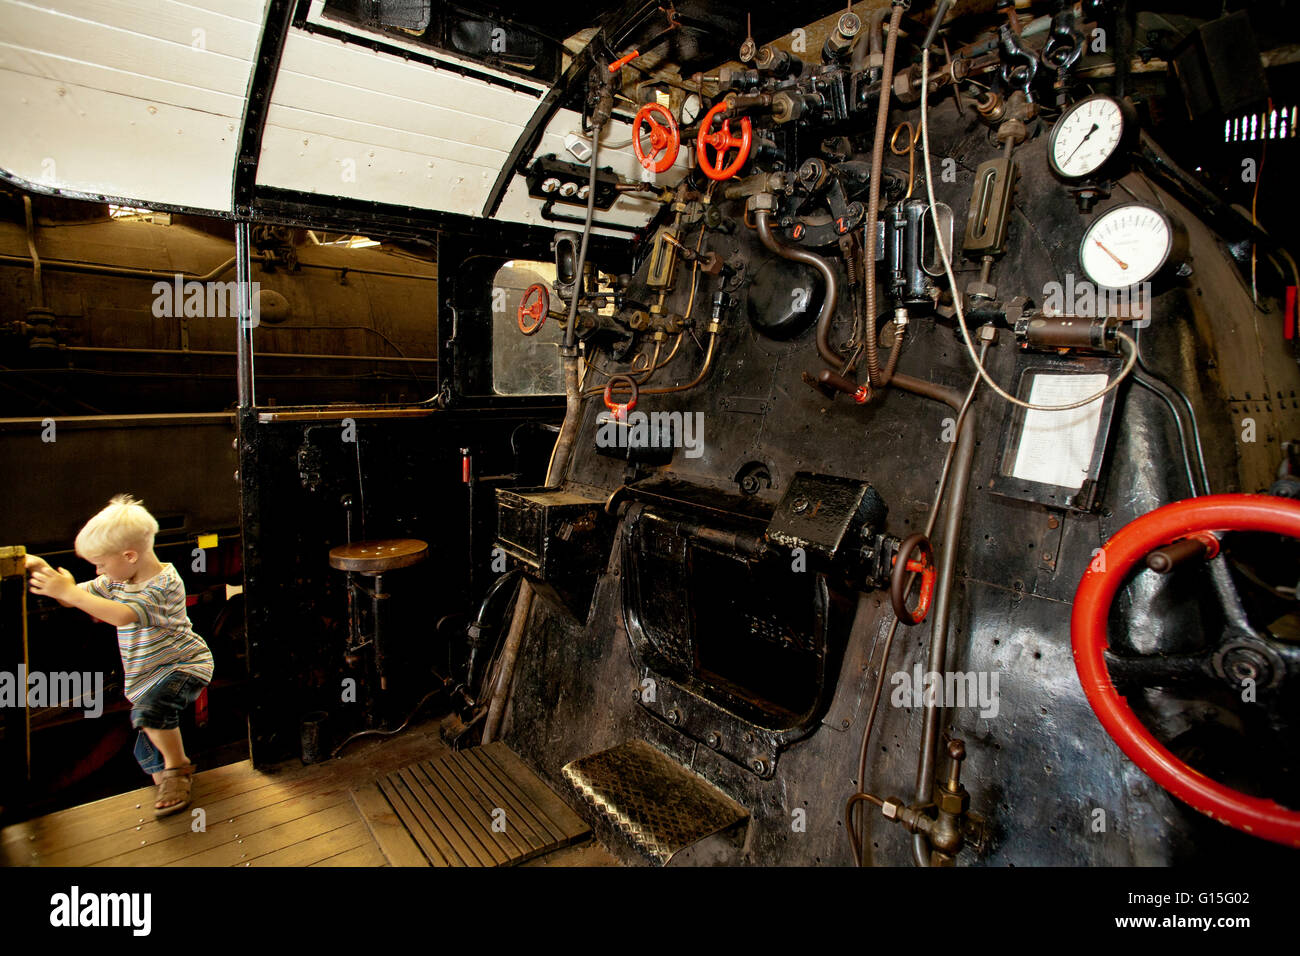 DEU, wird, Ruhr Gebiet, Bochum, Eisenbahn-Museum im Stadtteil Dahlhausen, Dampfmaschine in einem Hangar Taxi Fahrer mit Central-h Stockfoto